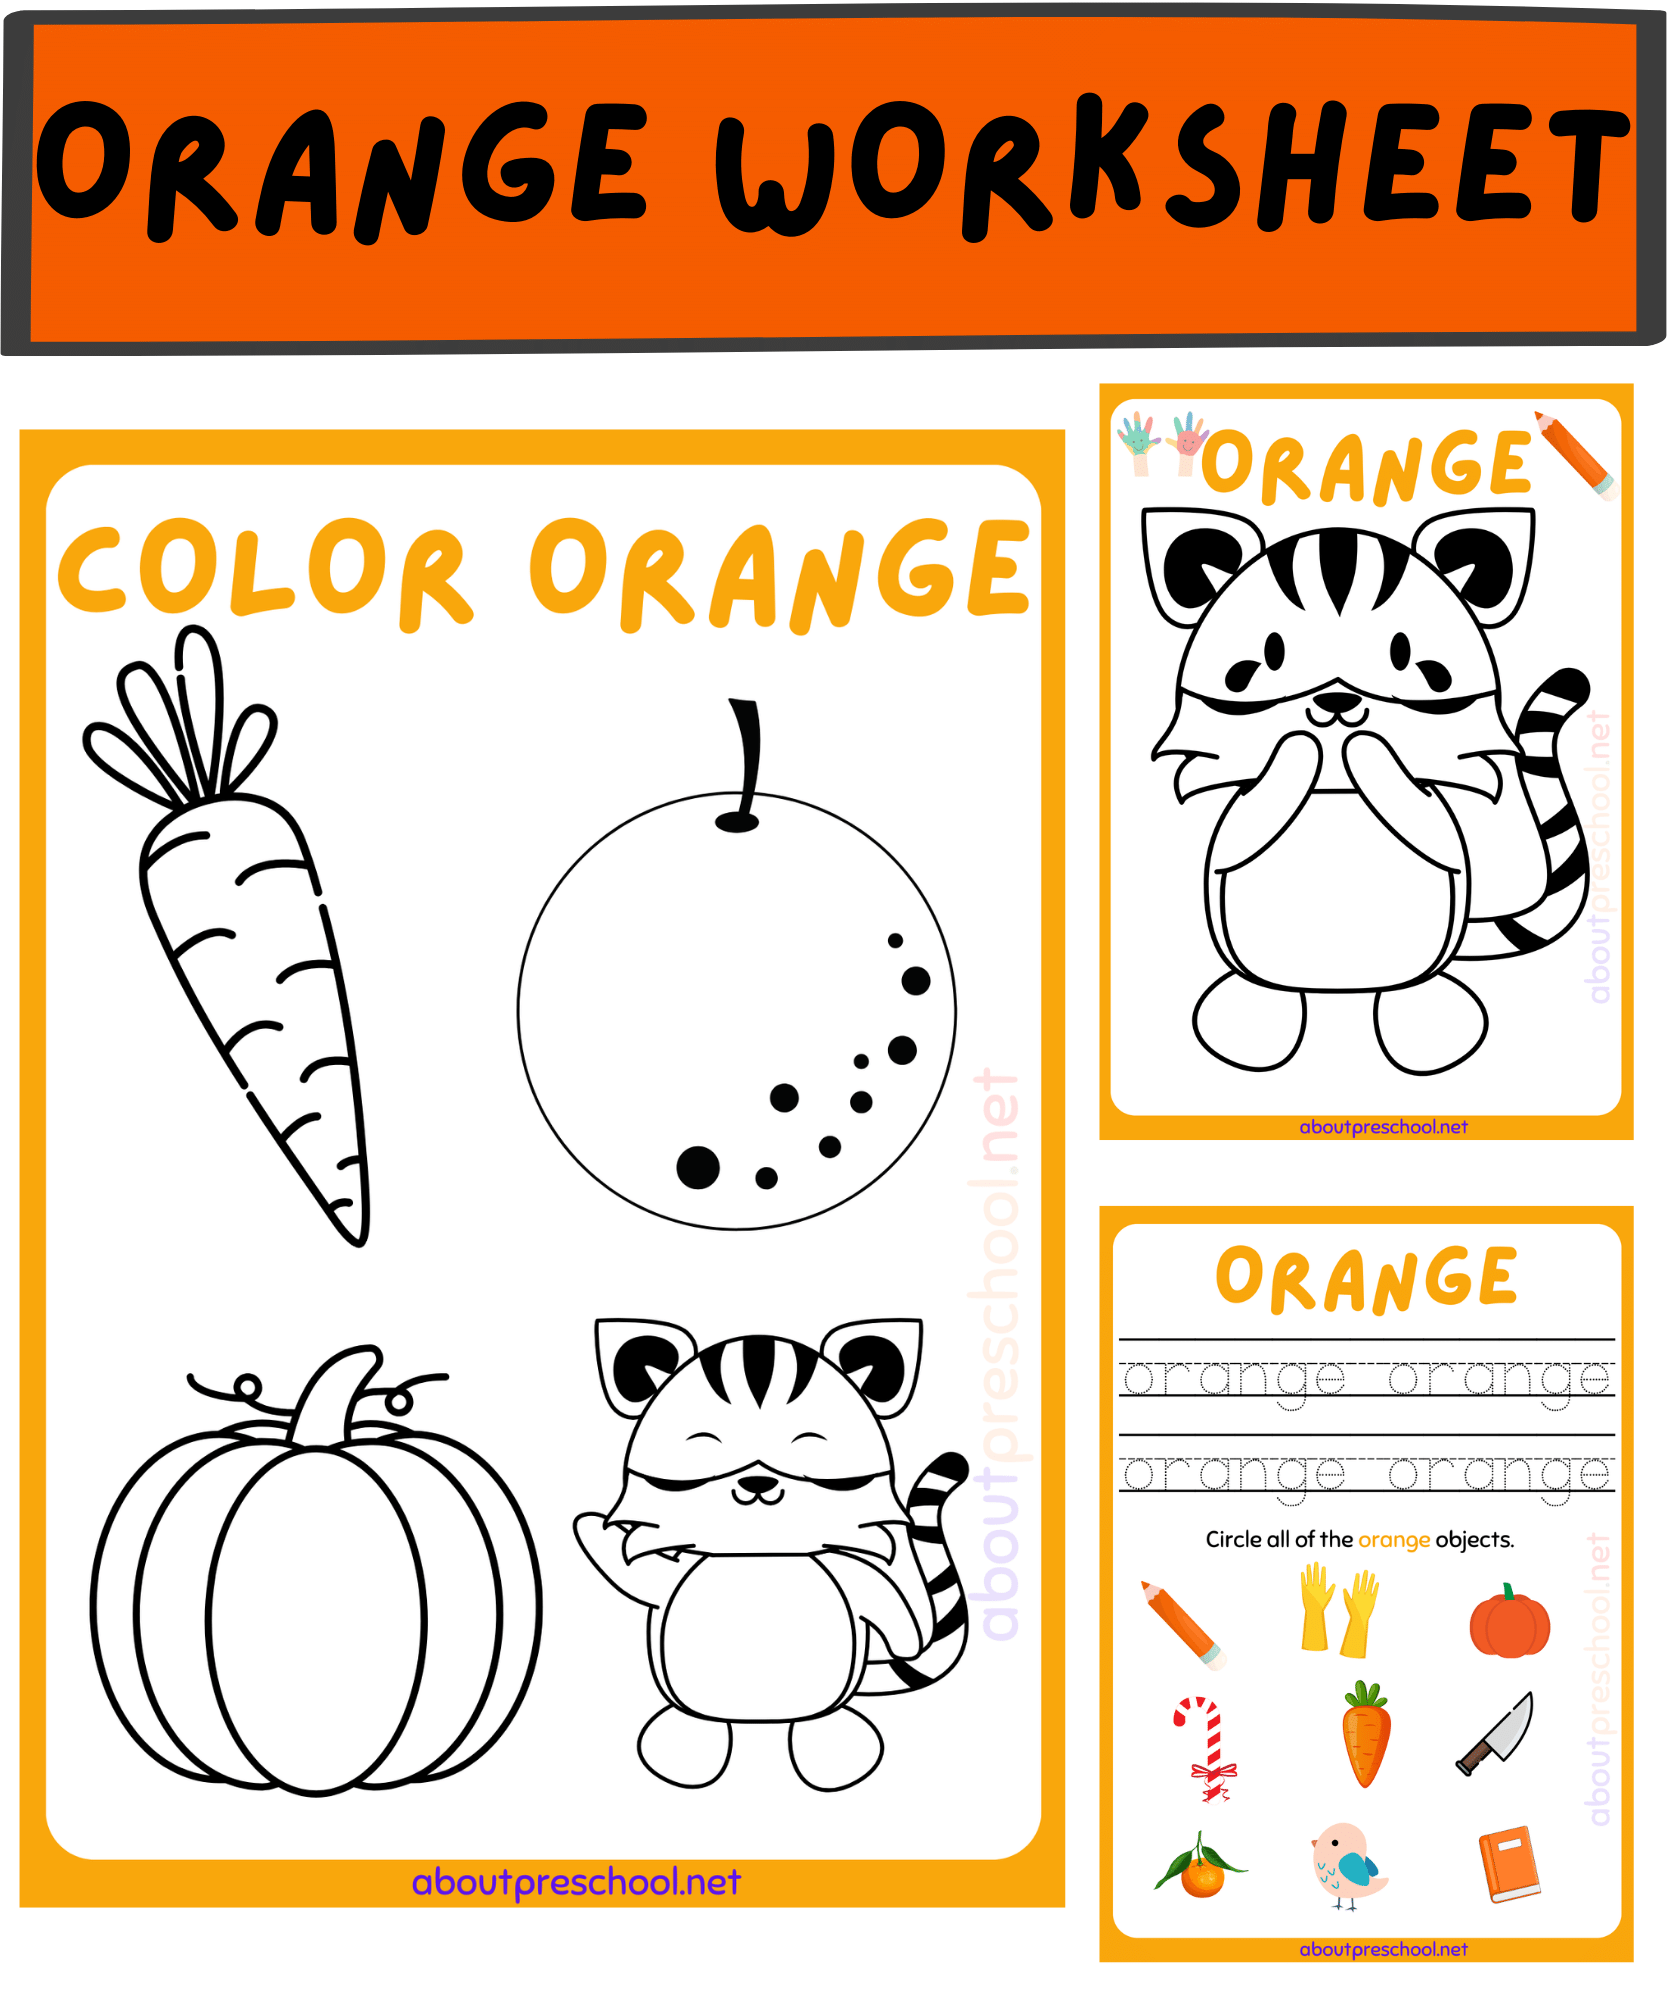 Color Orange worksheets for Kindergarten